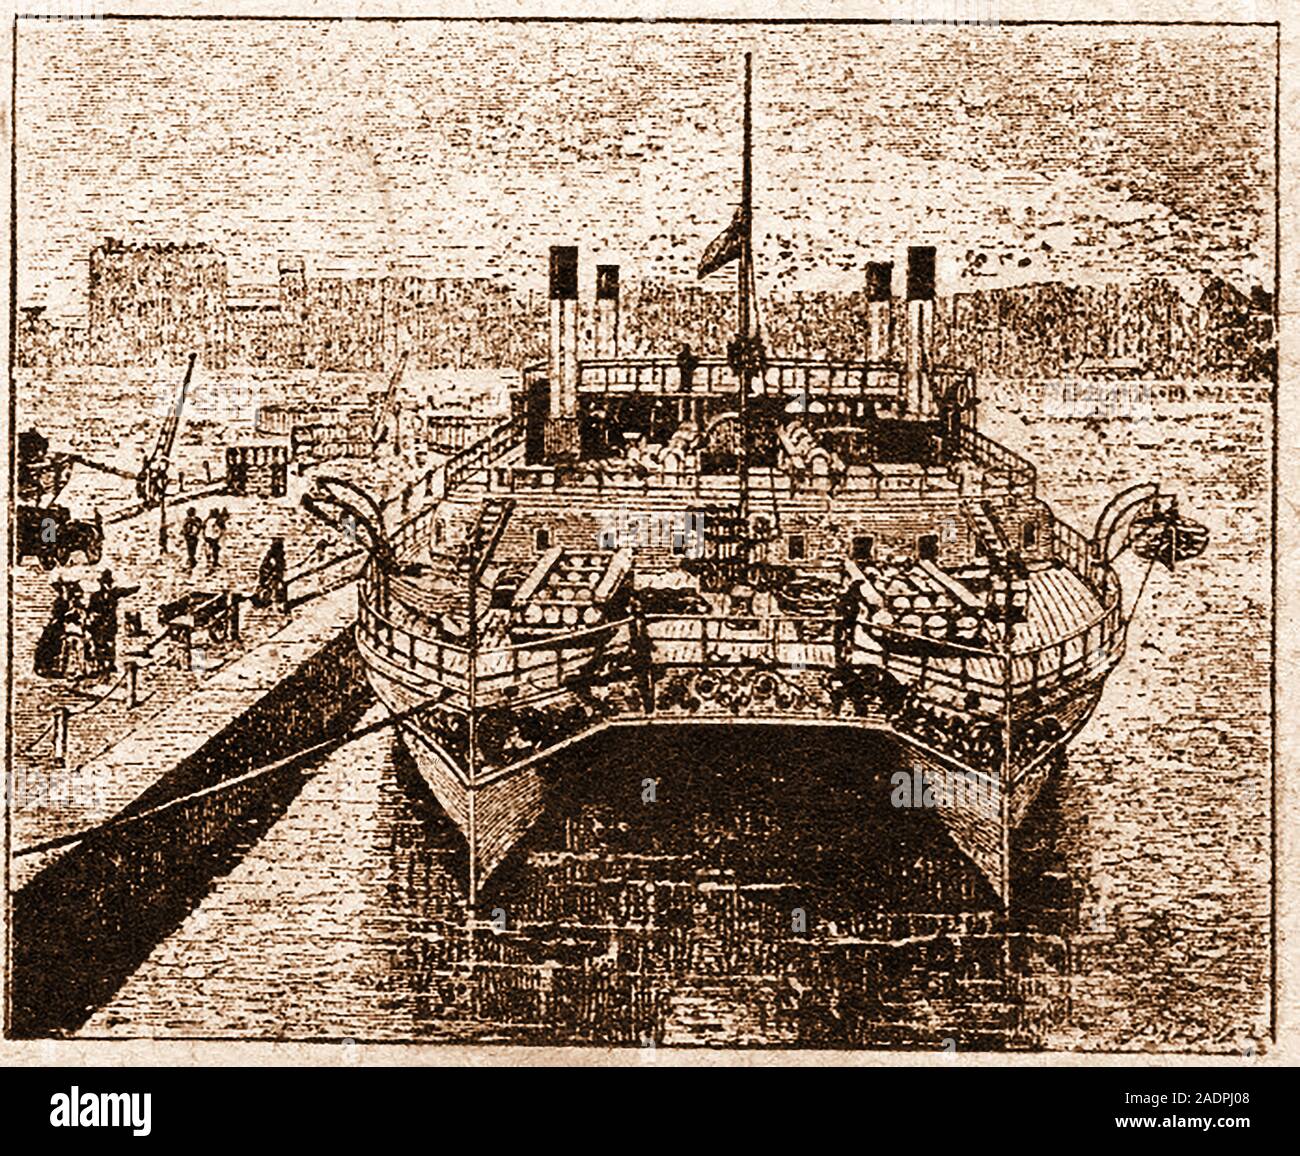 Au début étrange inventions - Double coque style catamaran cargo. Un prototype a été construit par la Thames Ironworks & Shipbuilding Co. en 1874, mais alors il est perdu pour l'histoire. Banque D'Images